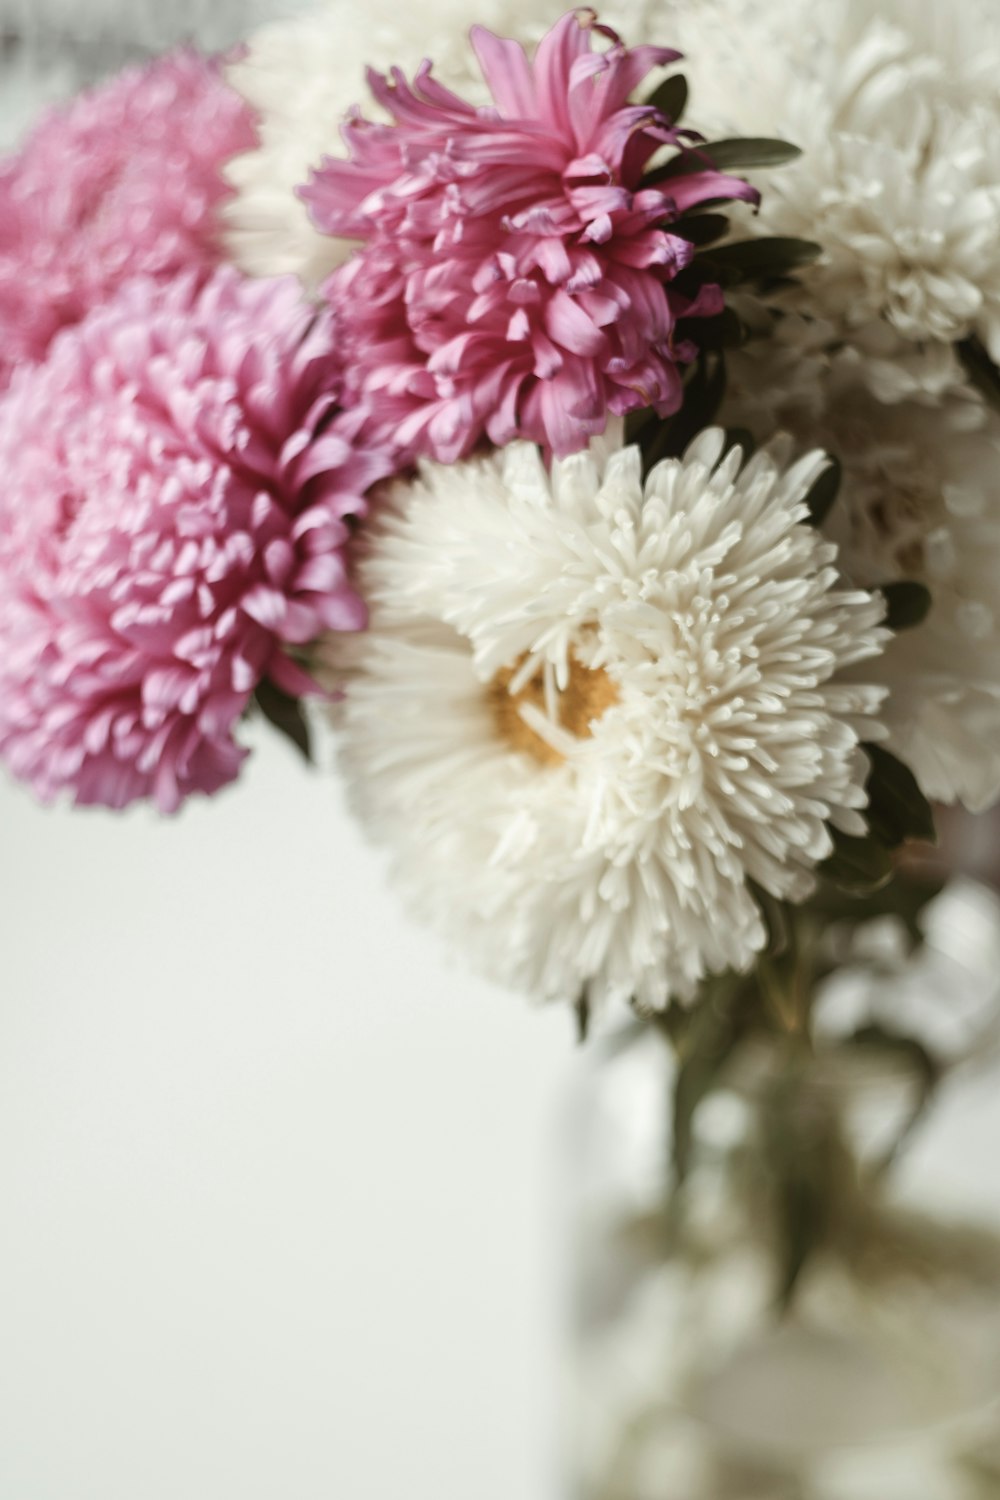 Photographie sélective de la pièce maîtresse de fleur à pétales blancs et roses